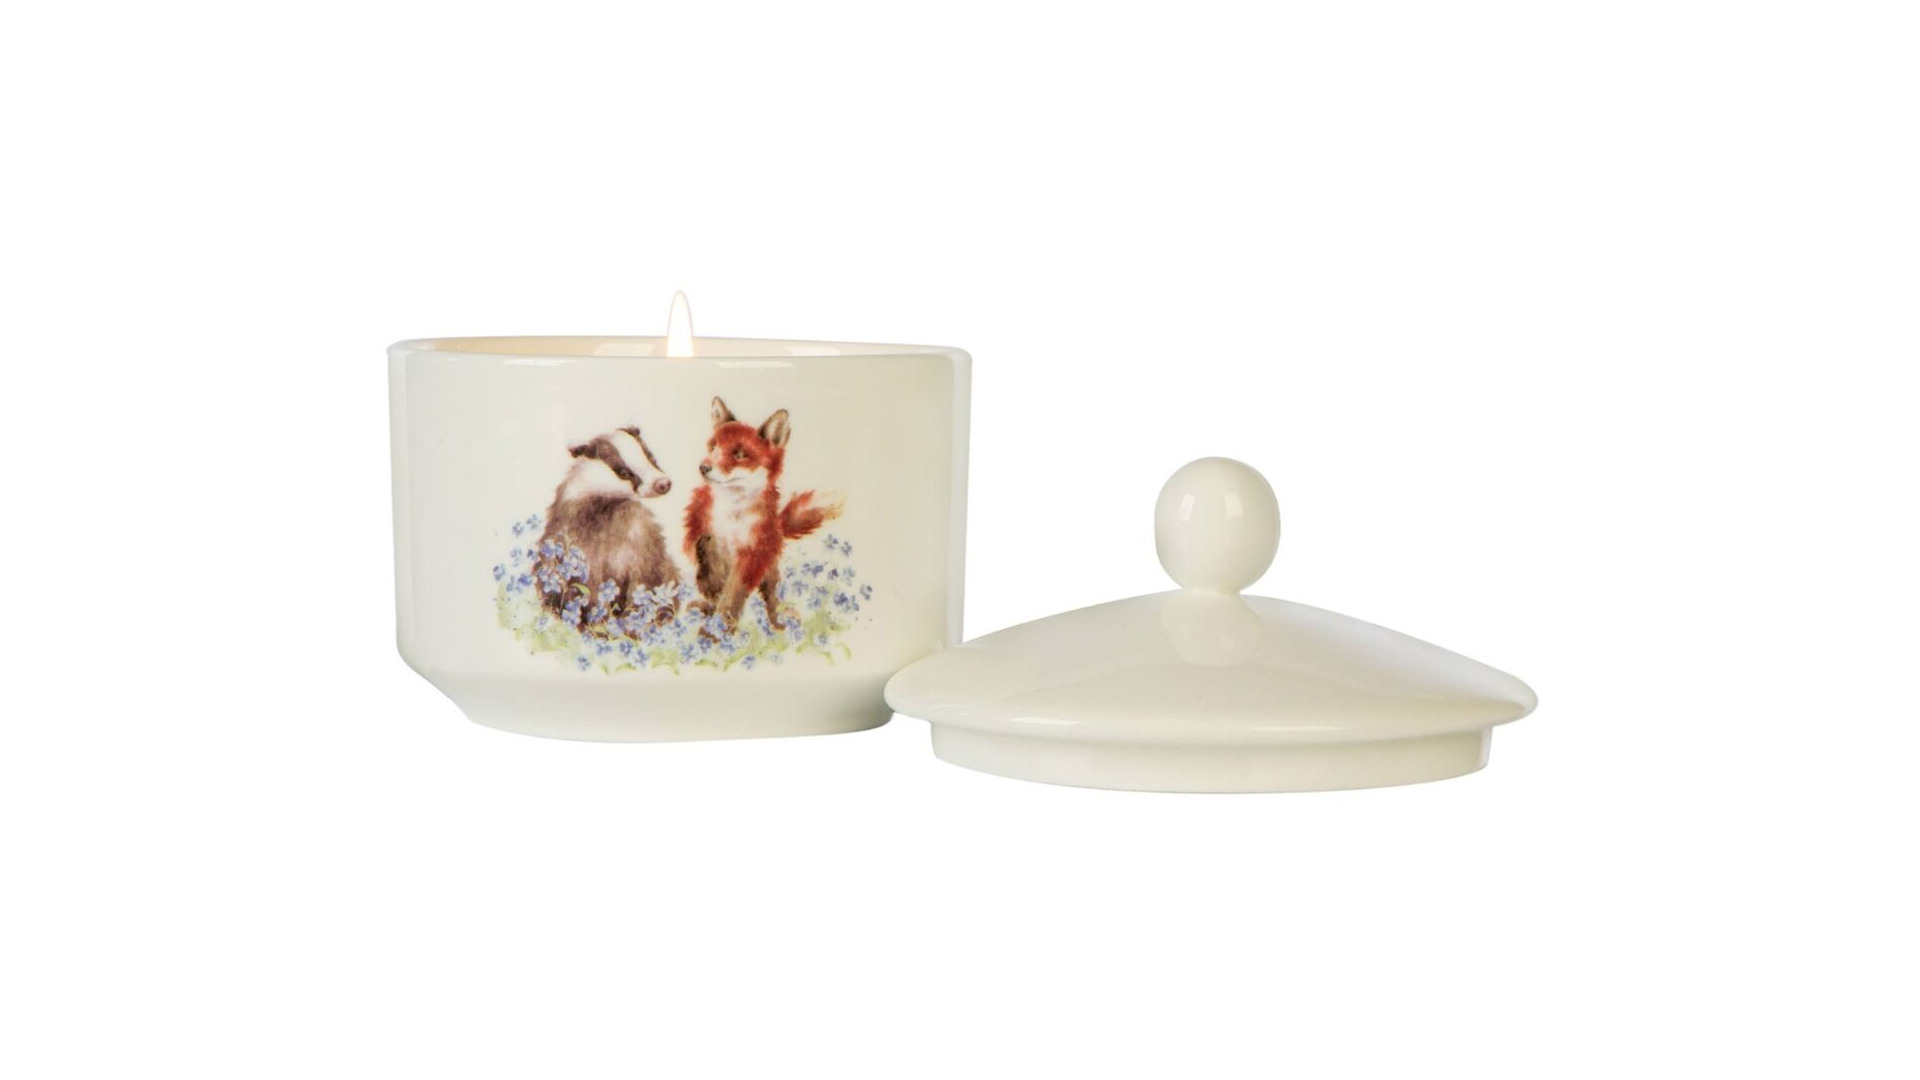 Свеча ароматическая в керамическом стакане Wax Lyrical Рендейл Таволга и белая сирень 10,5 см